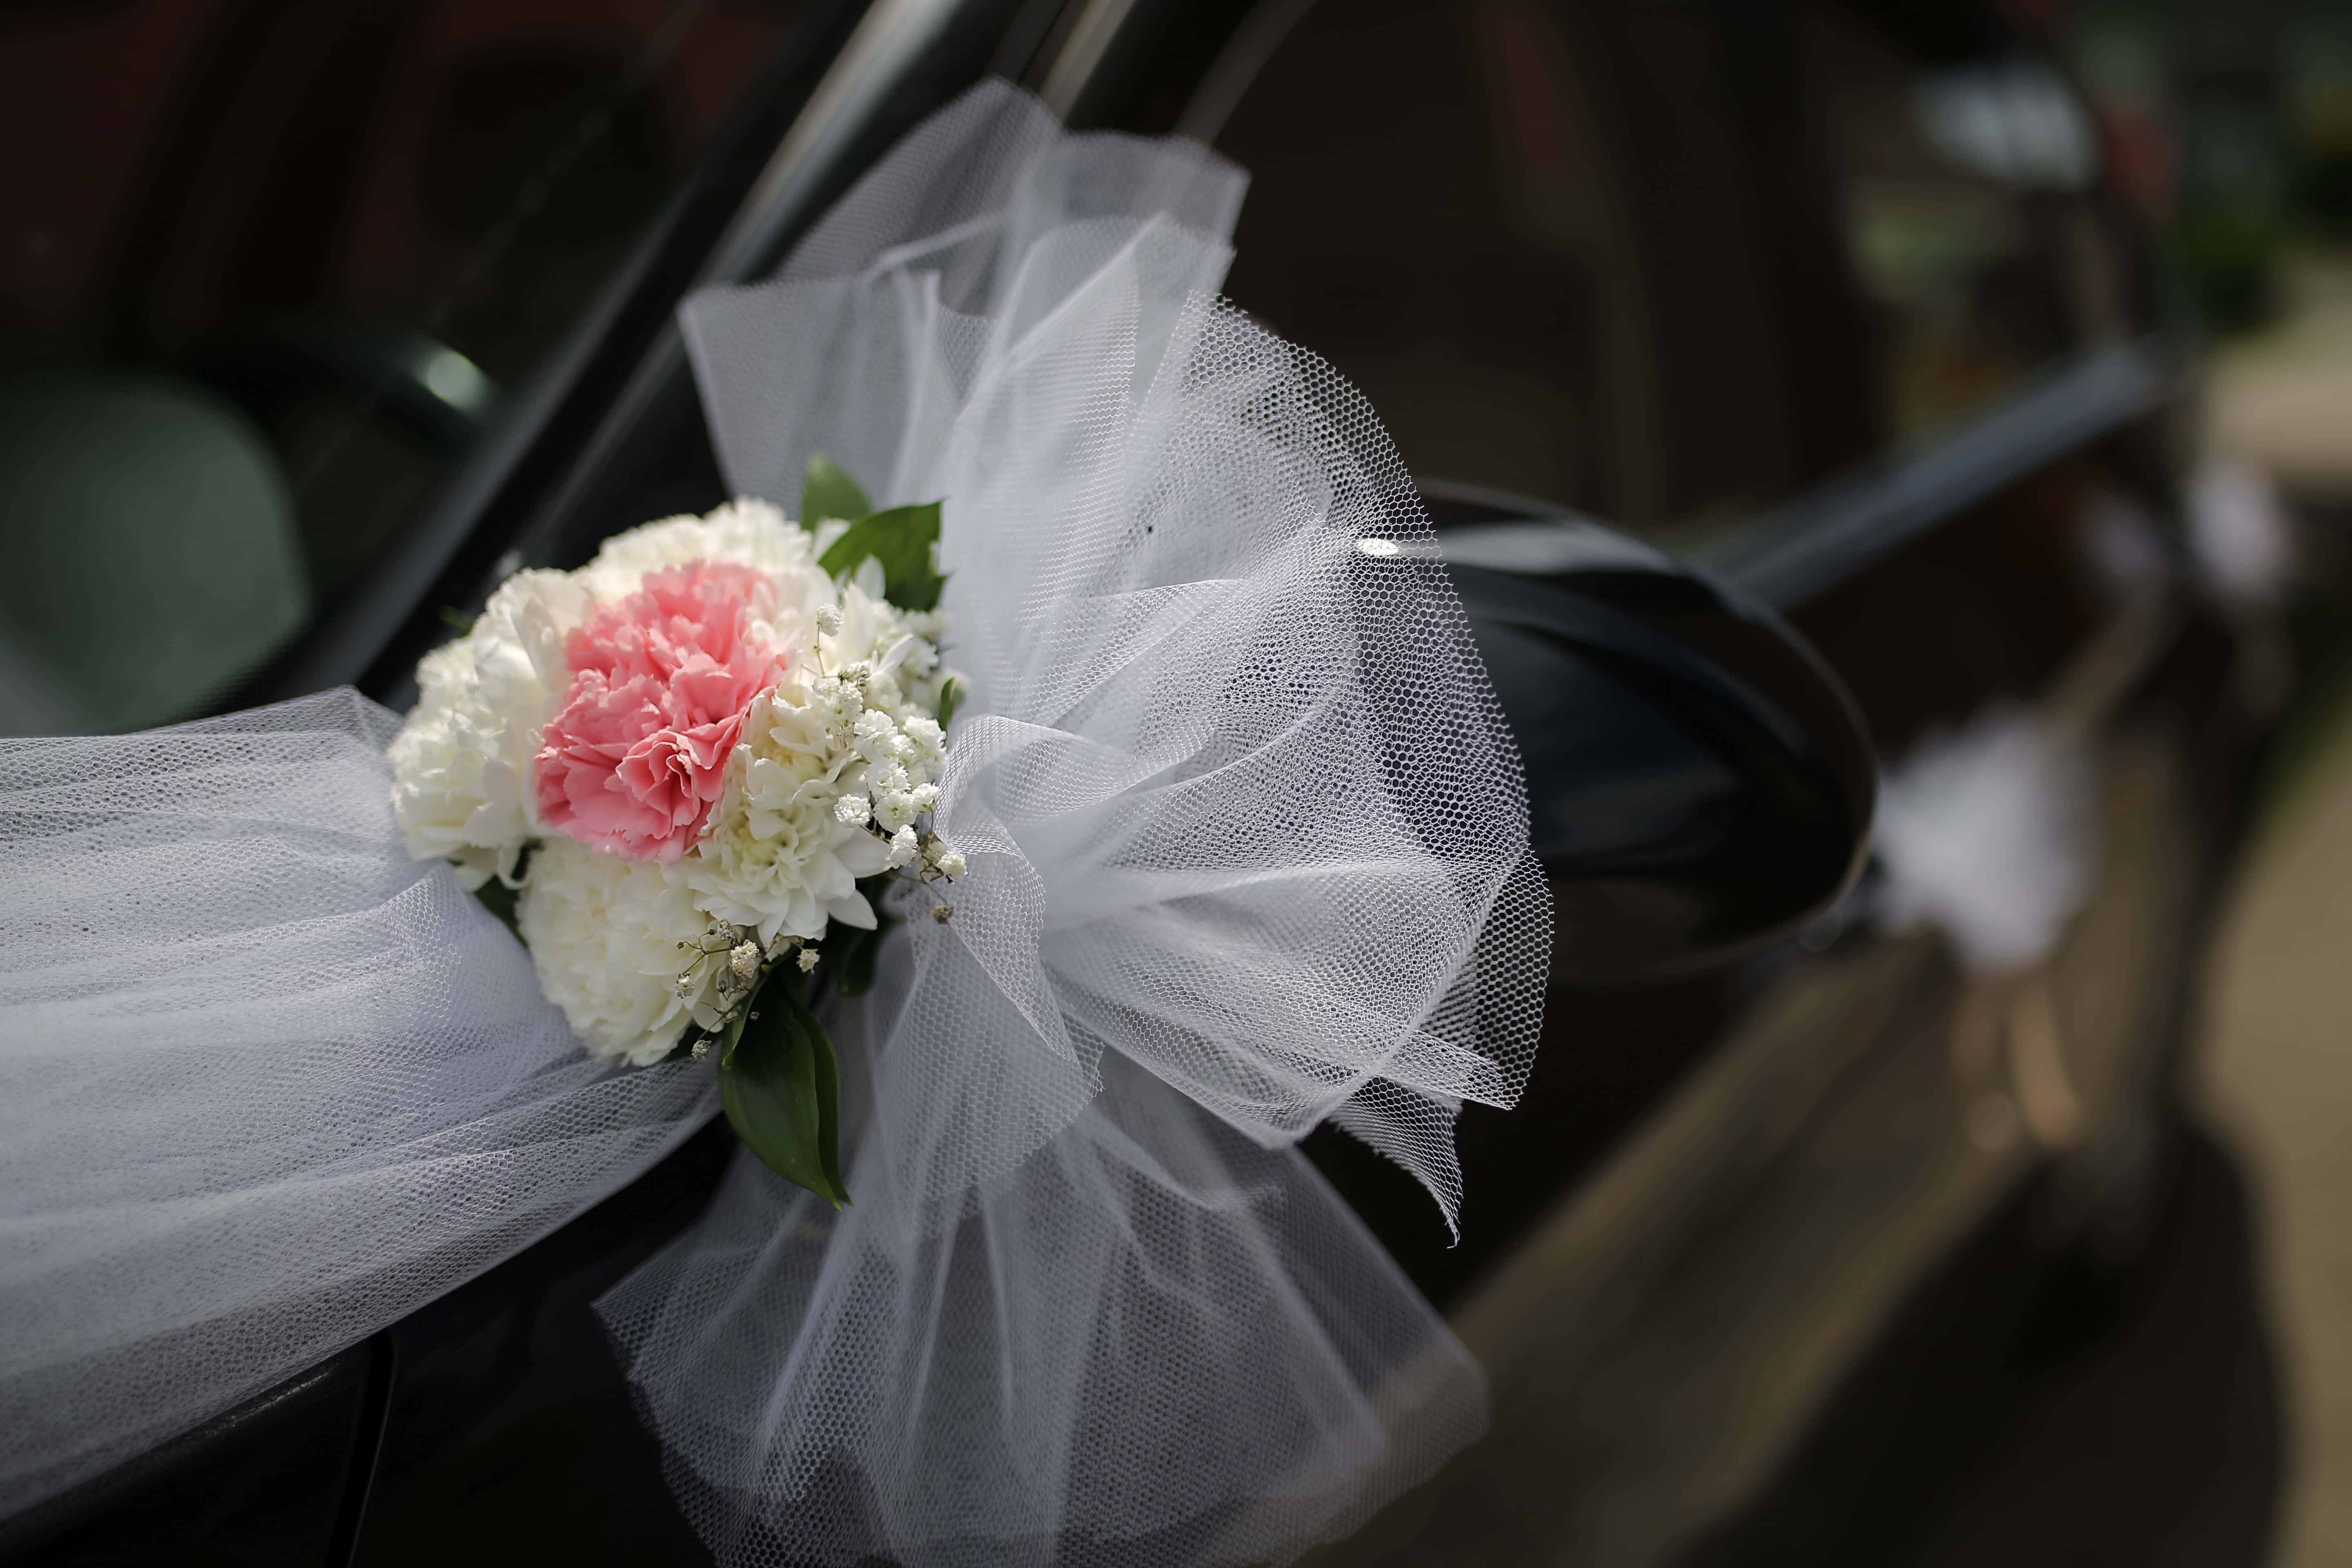 Kostenlose Bild: Auto, Spiegel, Anordnung, Limousine, Detail,  Hochzeitsstrauß, Hochzeit, Blumen, Romantik, Blumenstrauß